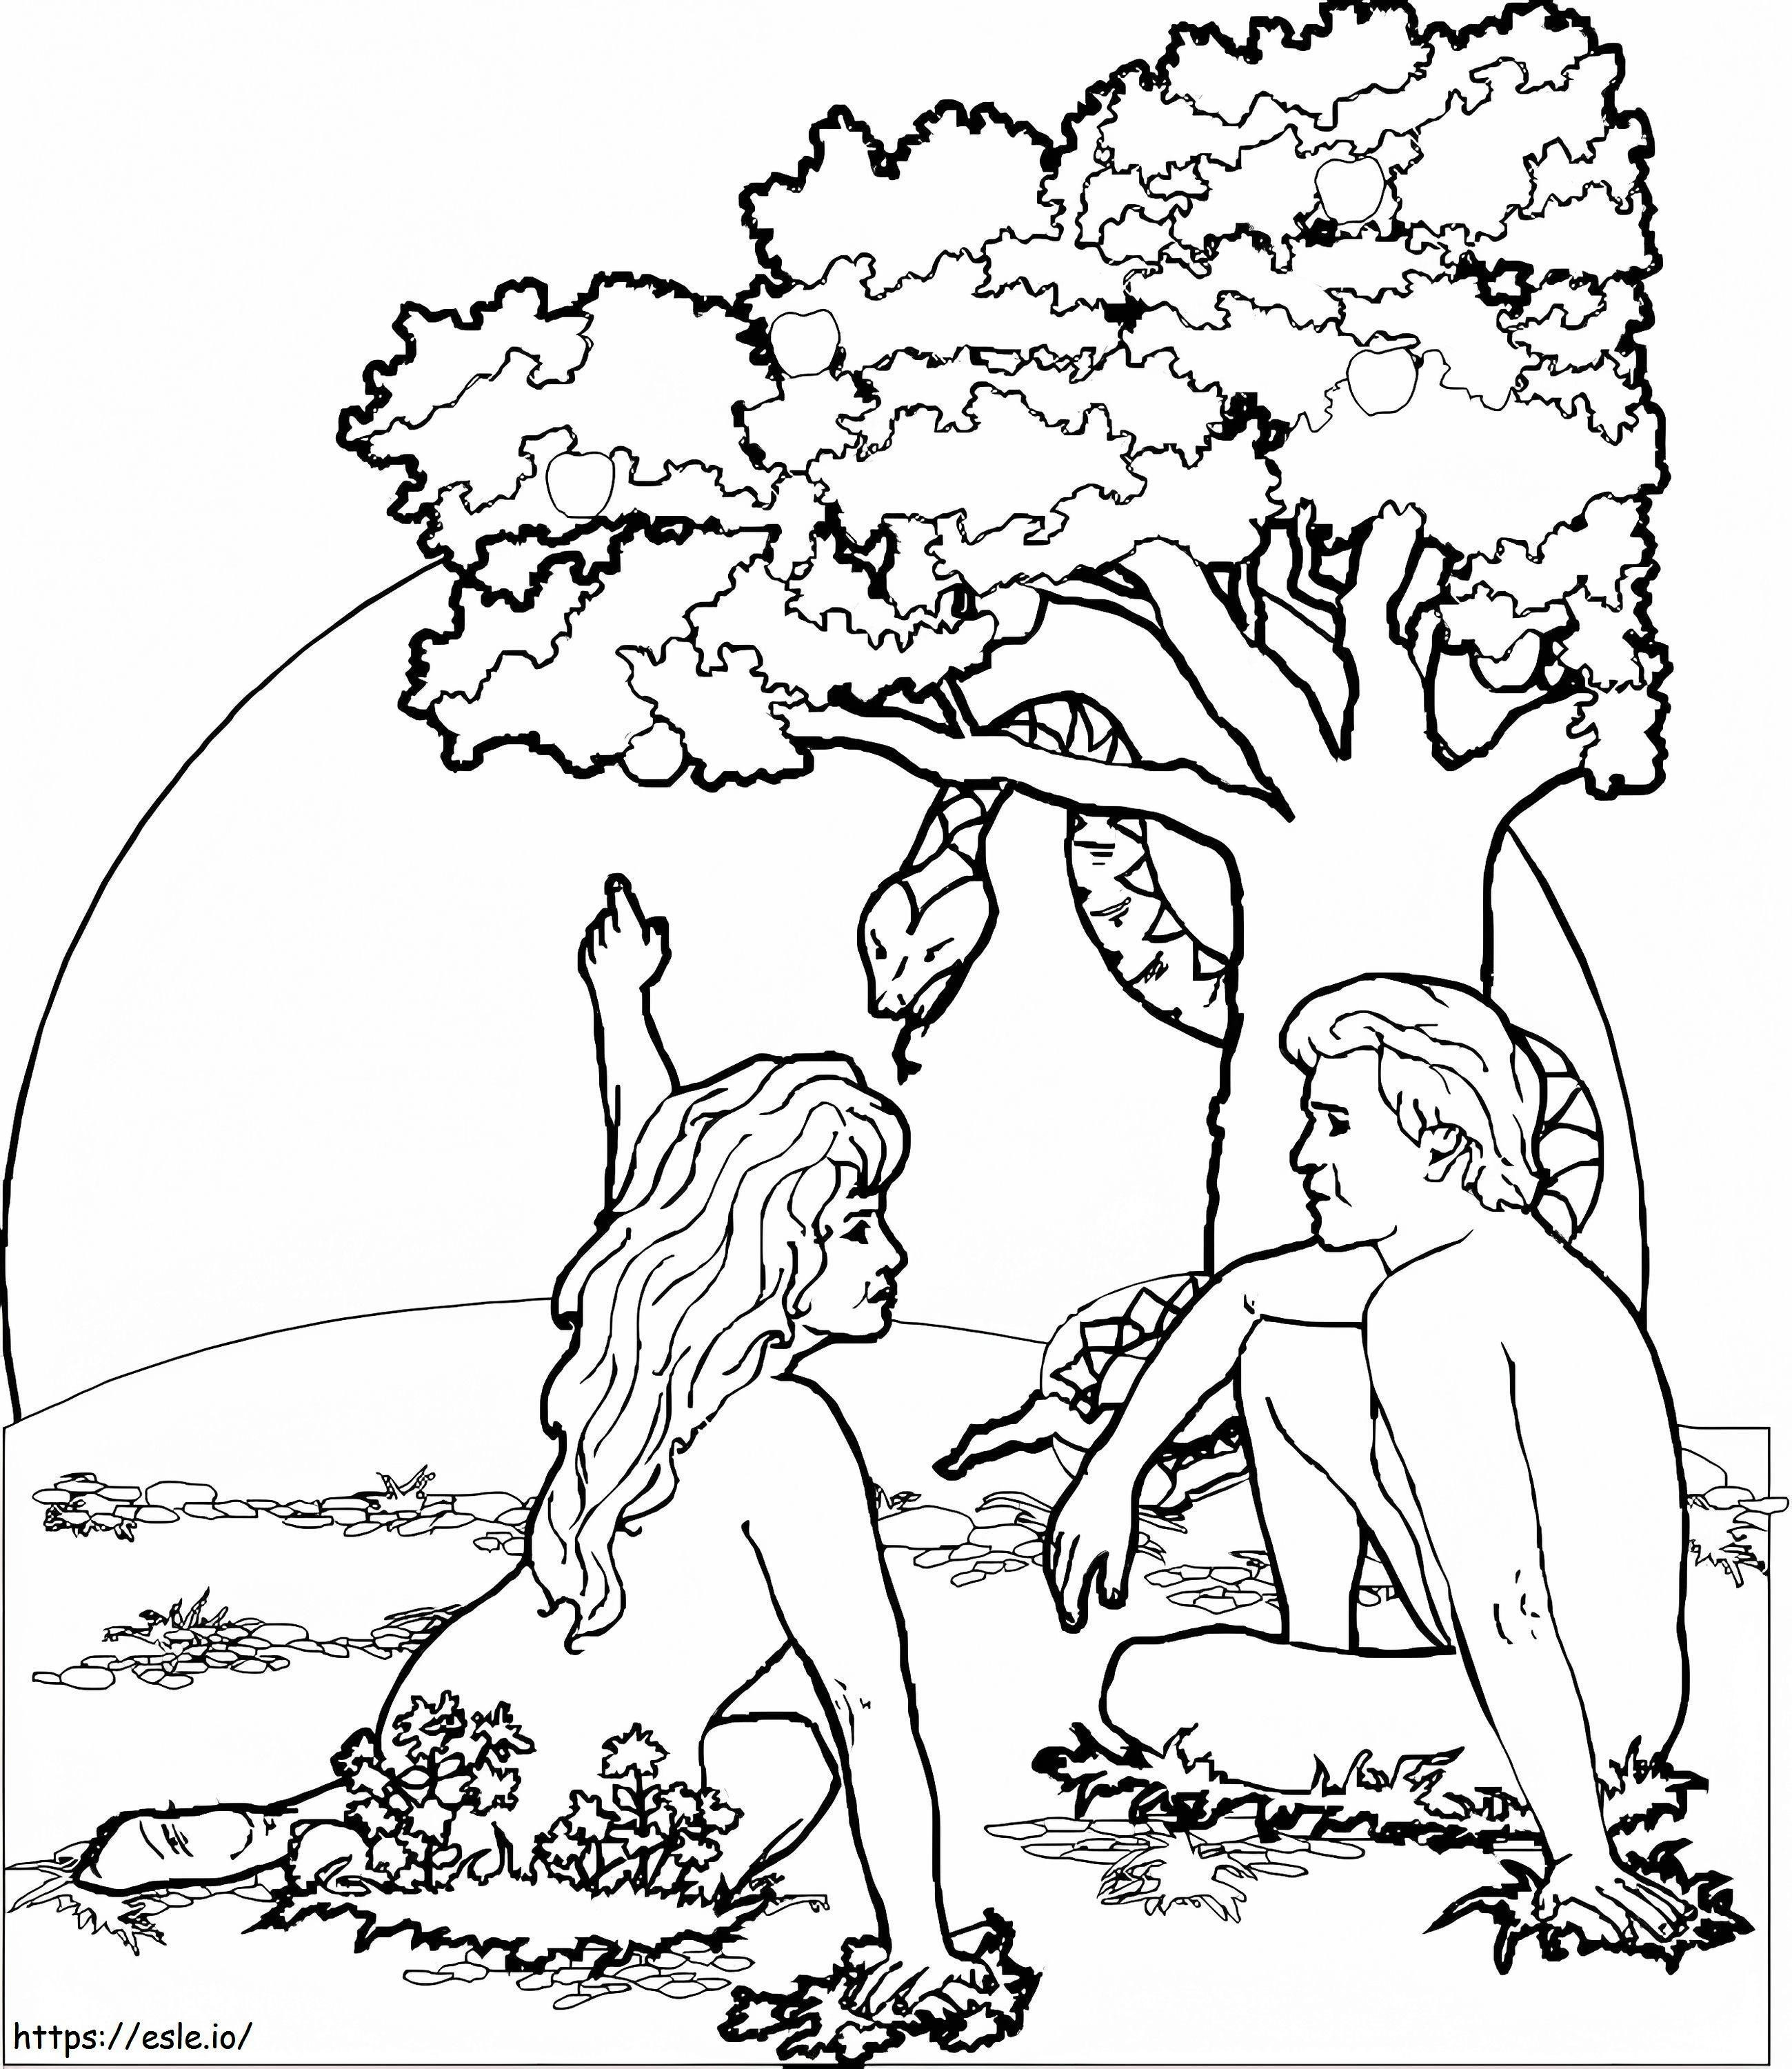 Adamo ed Eva 1 da colorare